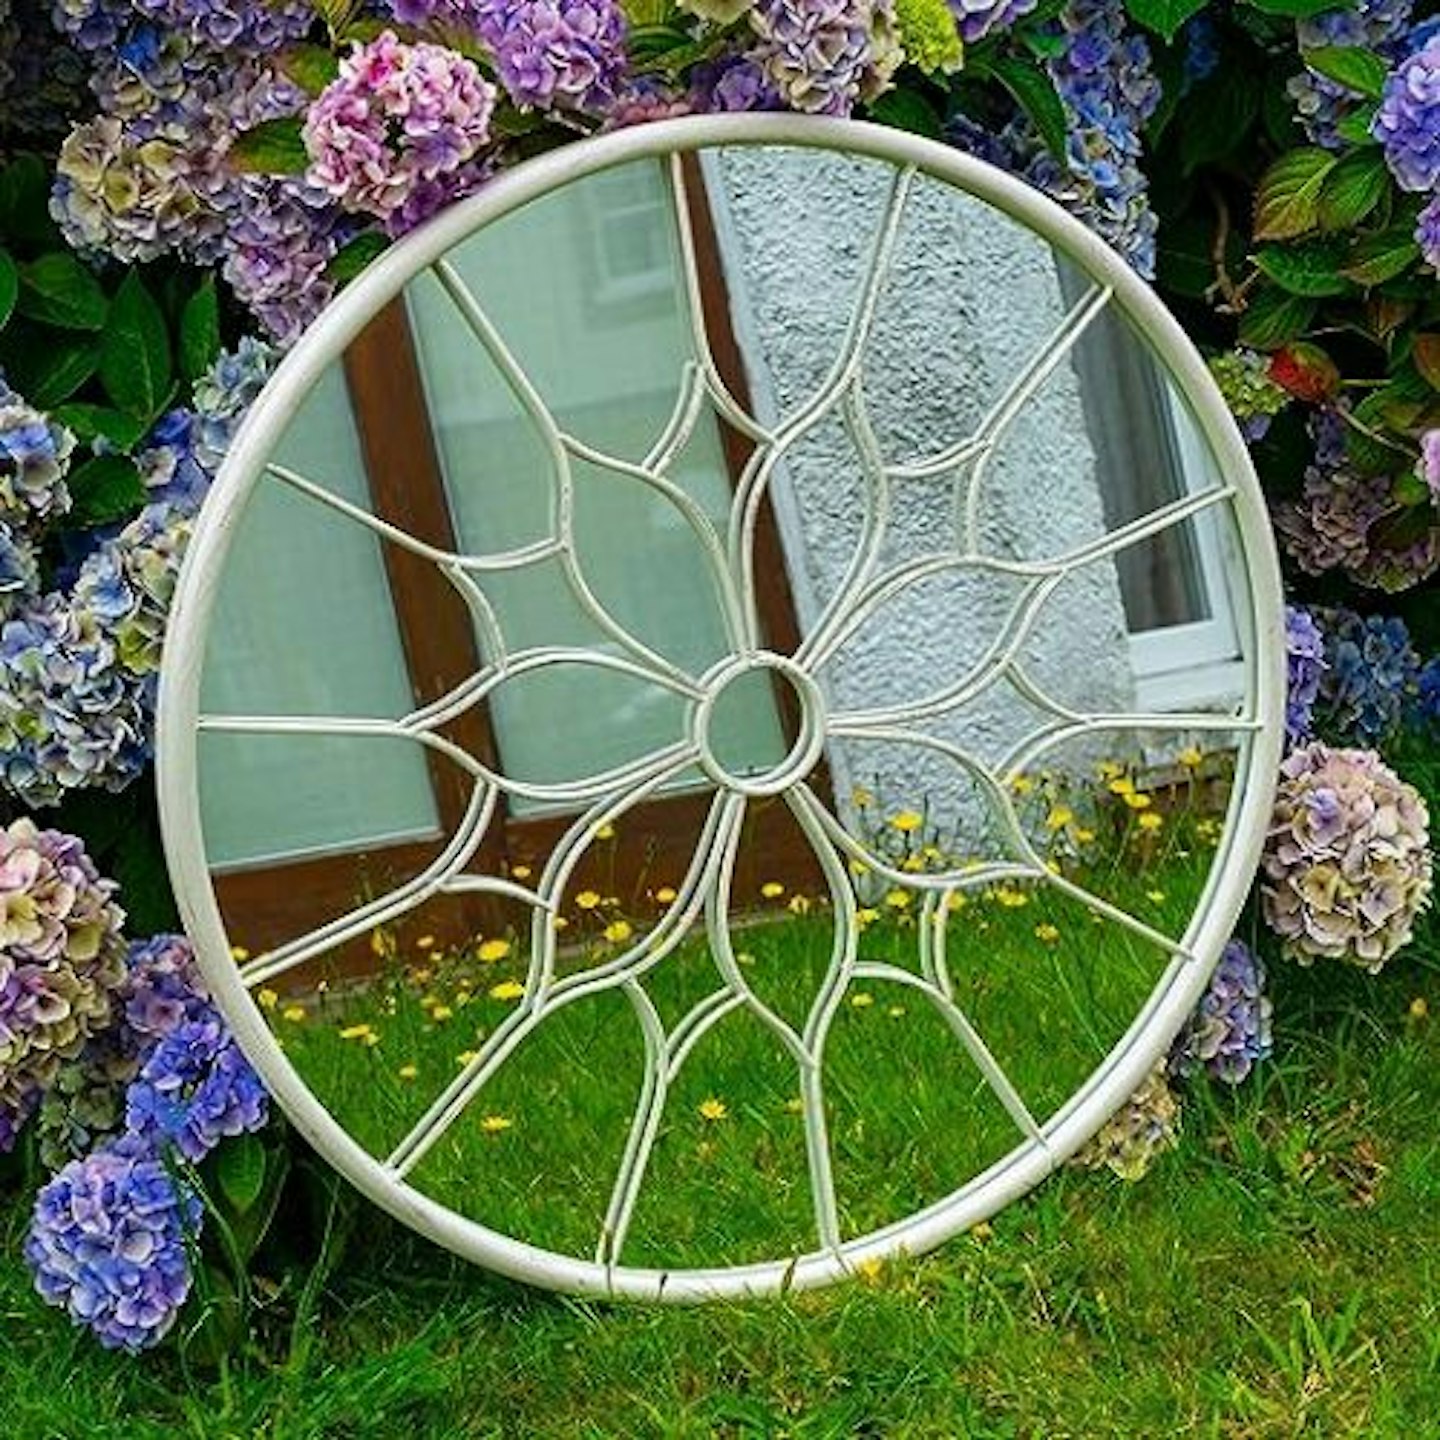 Woodside Yalding Decorative Outdoor Round Garden Mirror